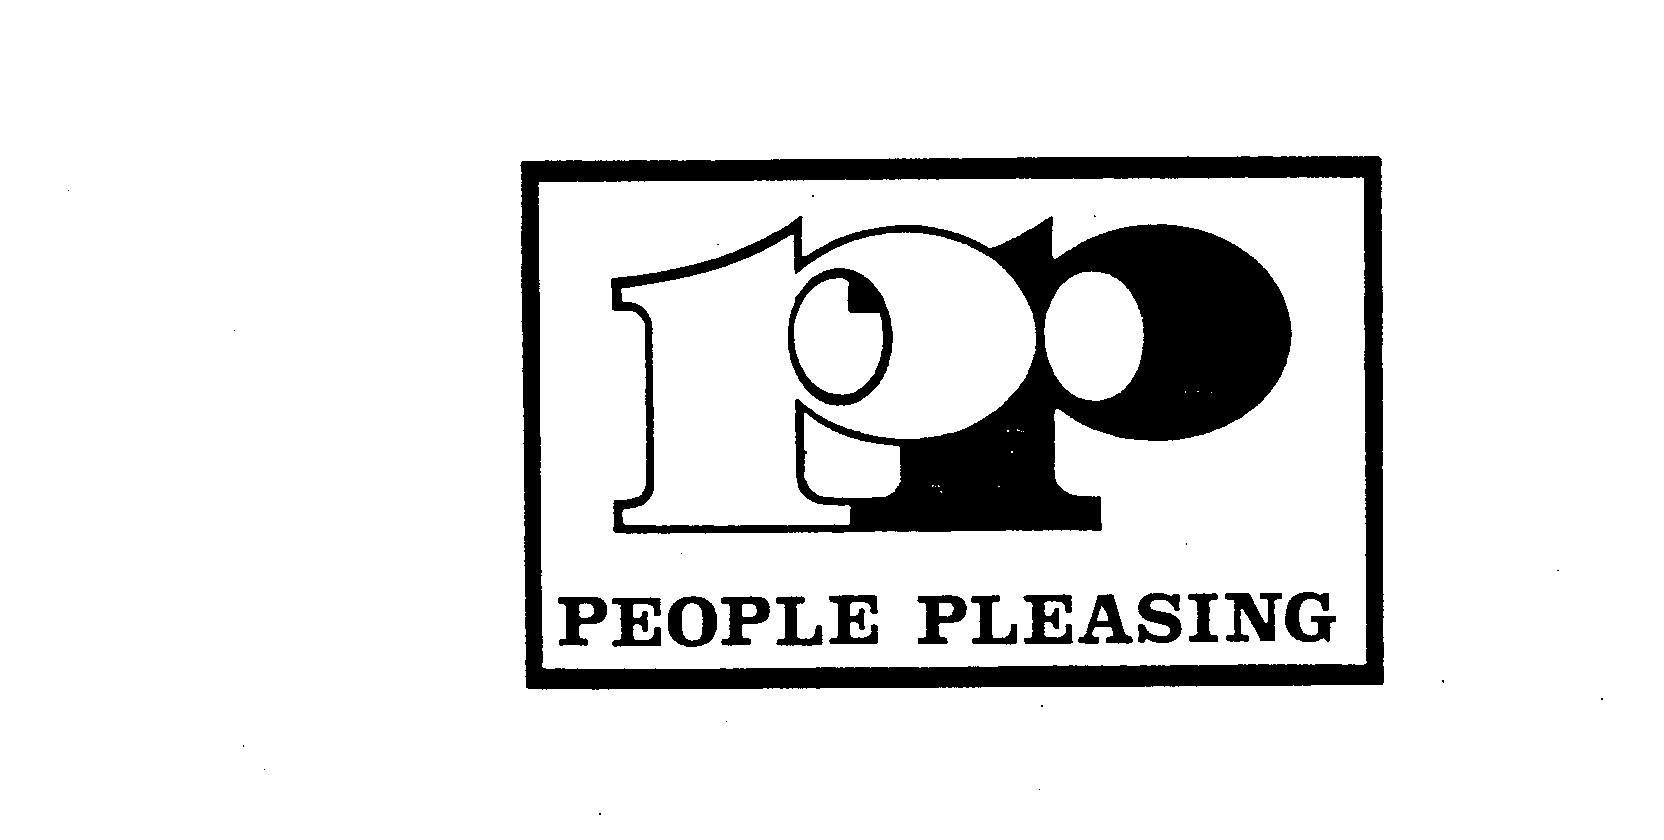  PP PEOPLE PLEASING